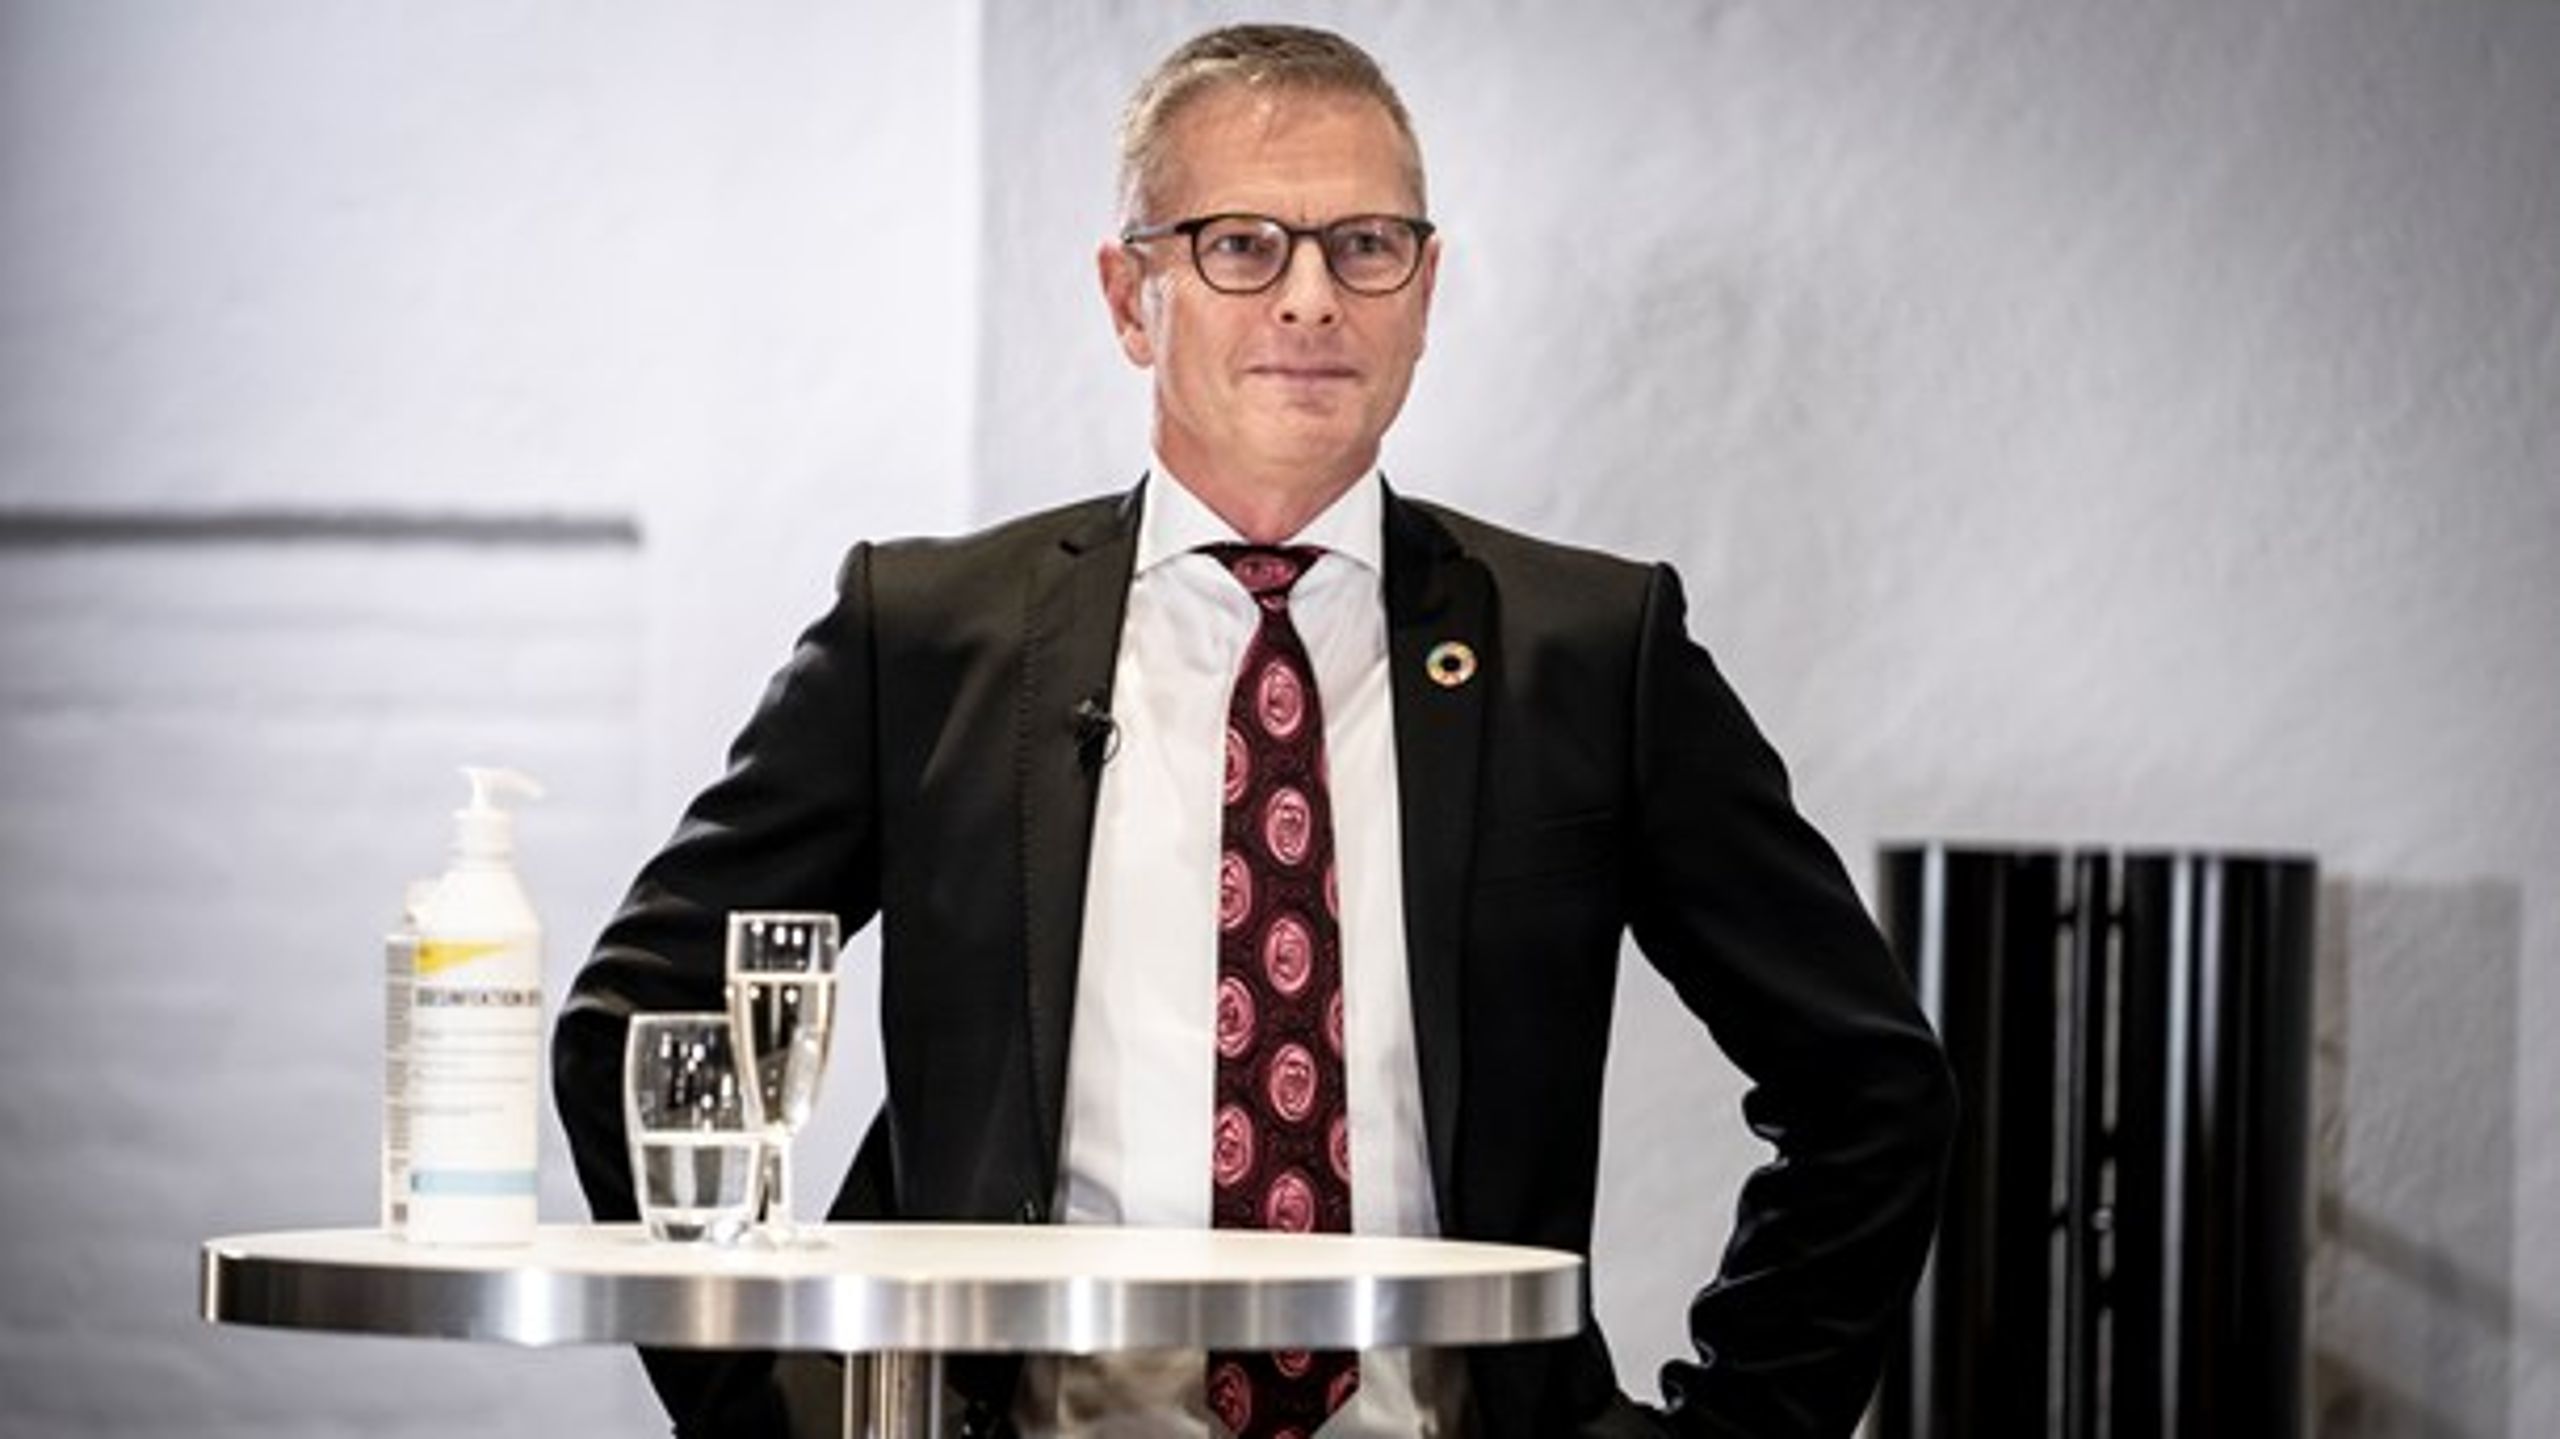 Flemming Møller Mortensen, minister for udviklingssamarbejde og nordisk samarbejde, henter tidligere s-rådgiver ind som sin særlige rådgiver.